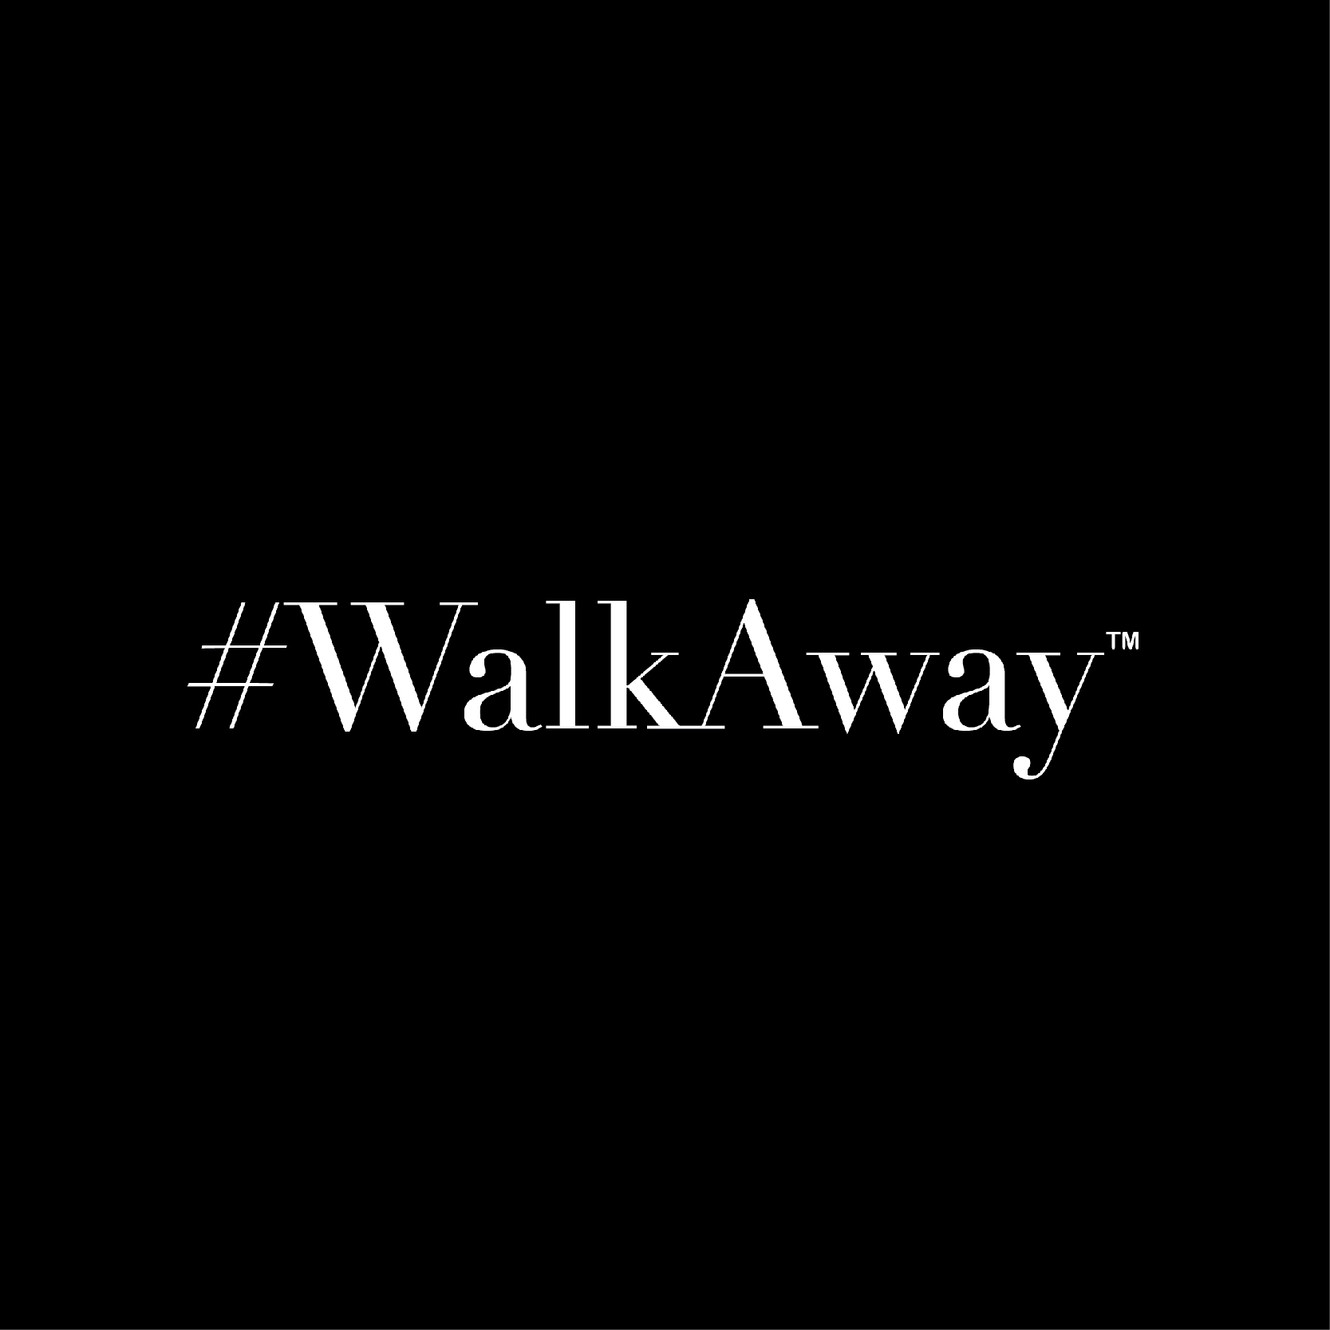 www.walkawaycampaign.com